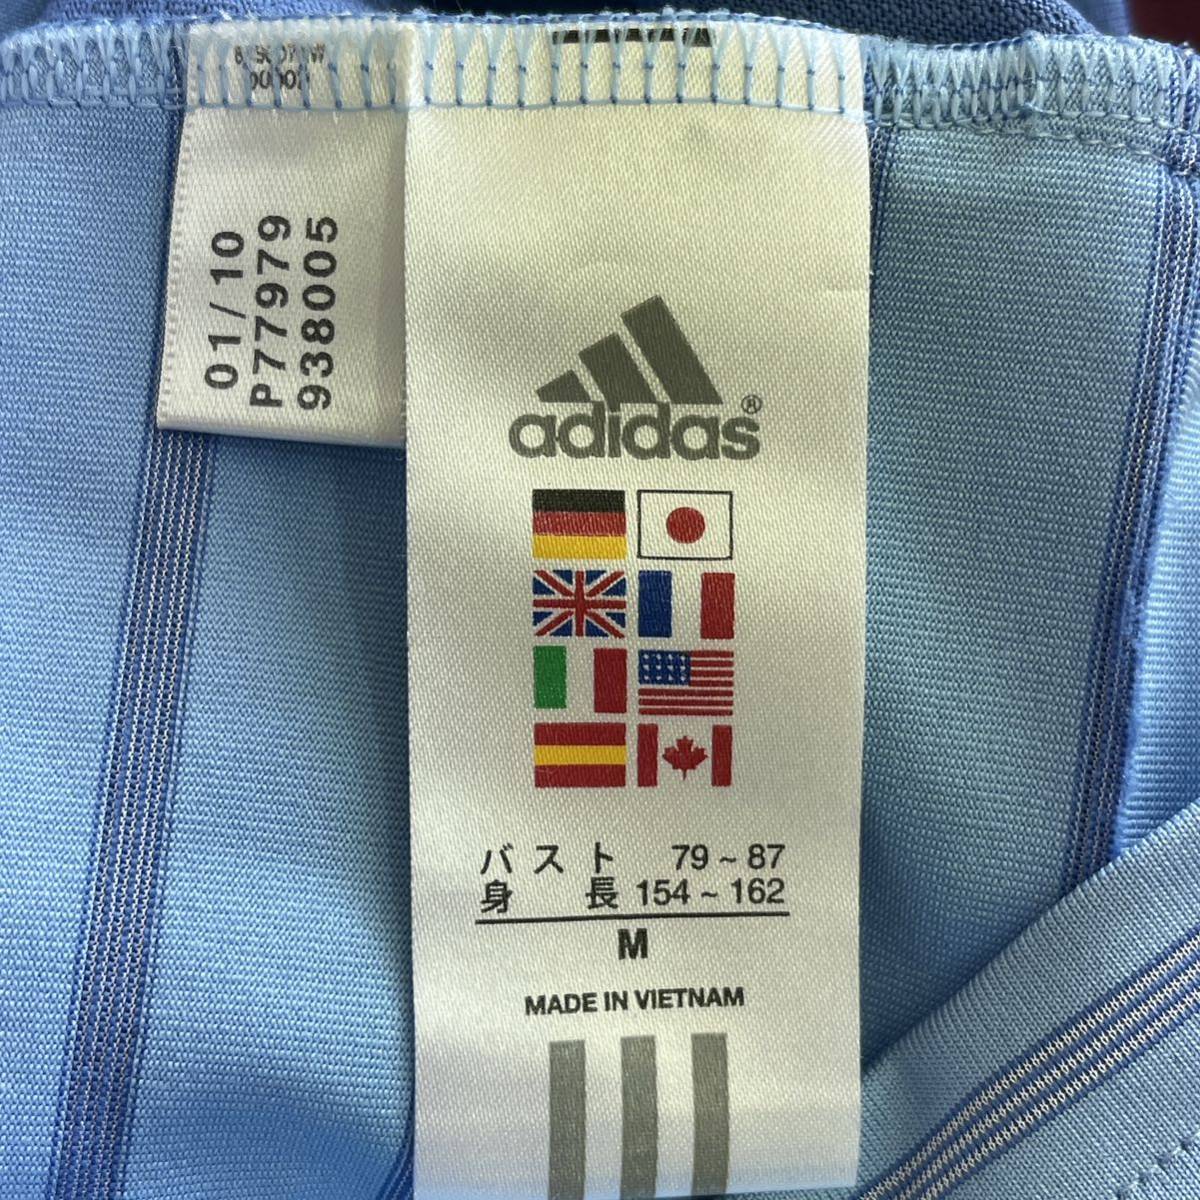 アディダス adidas レディース ゴルフクラブ 半袖 ポロシャツ Mサイズ 水色 ライトブルー ボーダー ハーブジップ lll_画像8